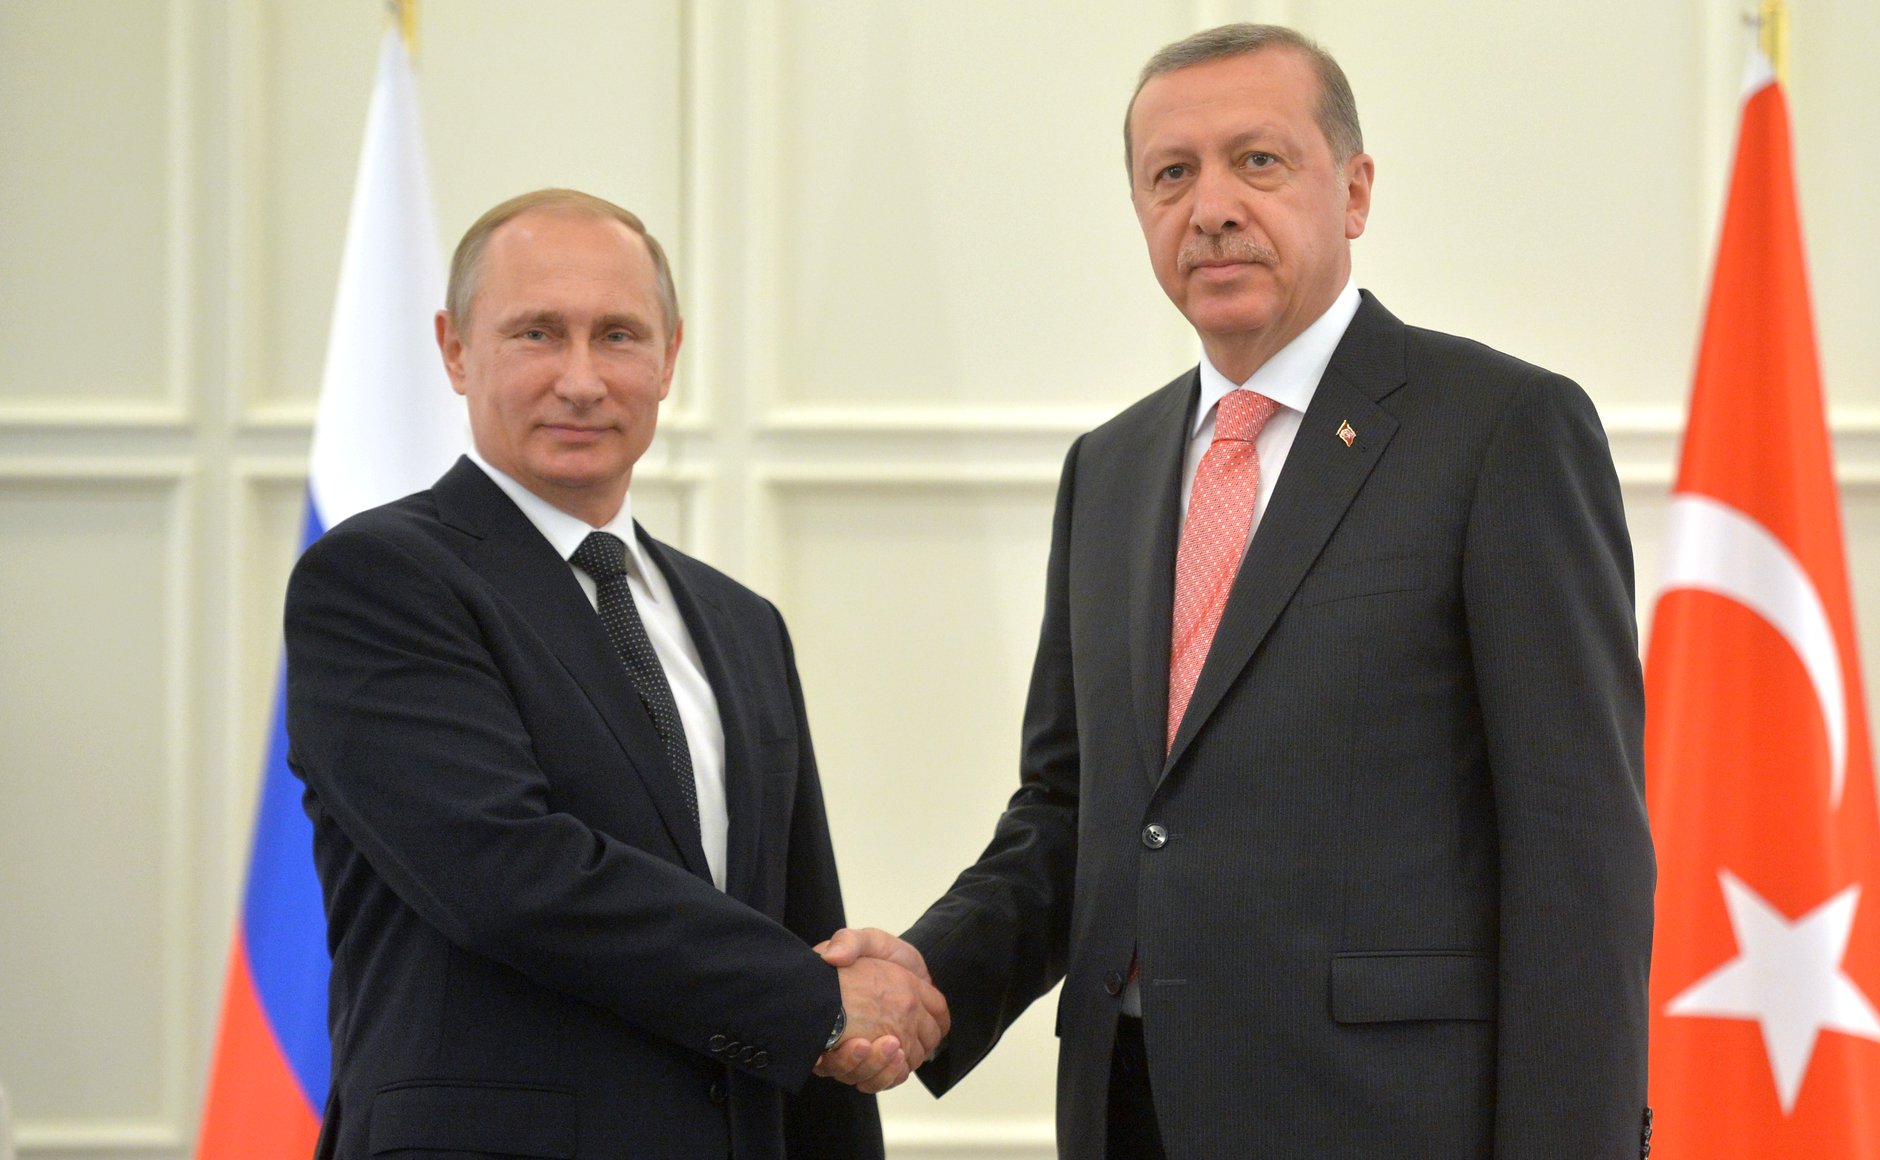 Spotkanie Erdoğan–Putin w czerwcu 2015 roku (fot. Kremlin.ru, Creative Commons Attribution 4.0 International)